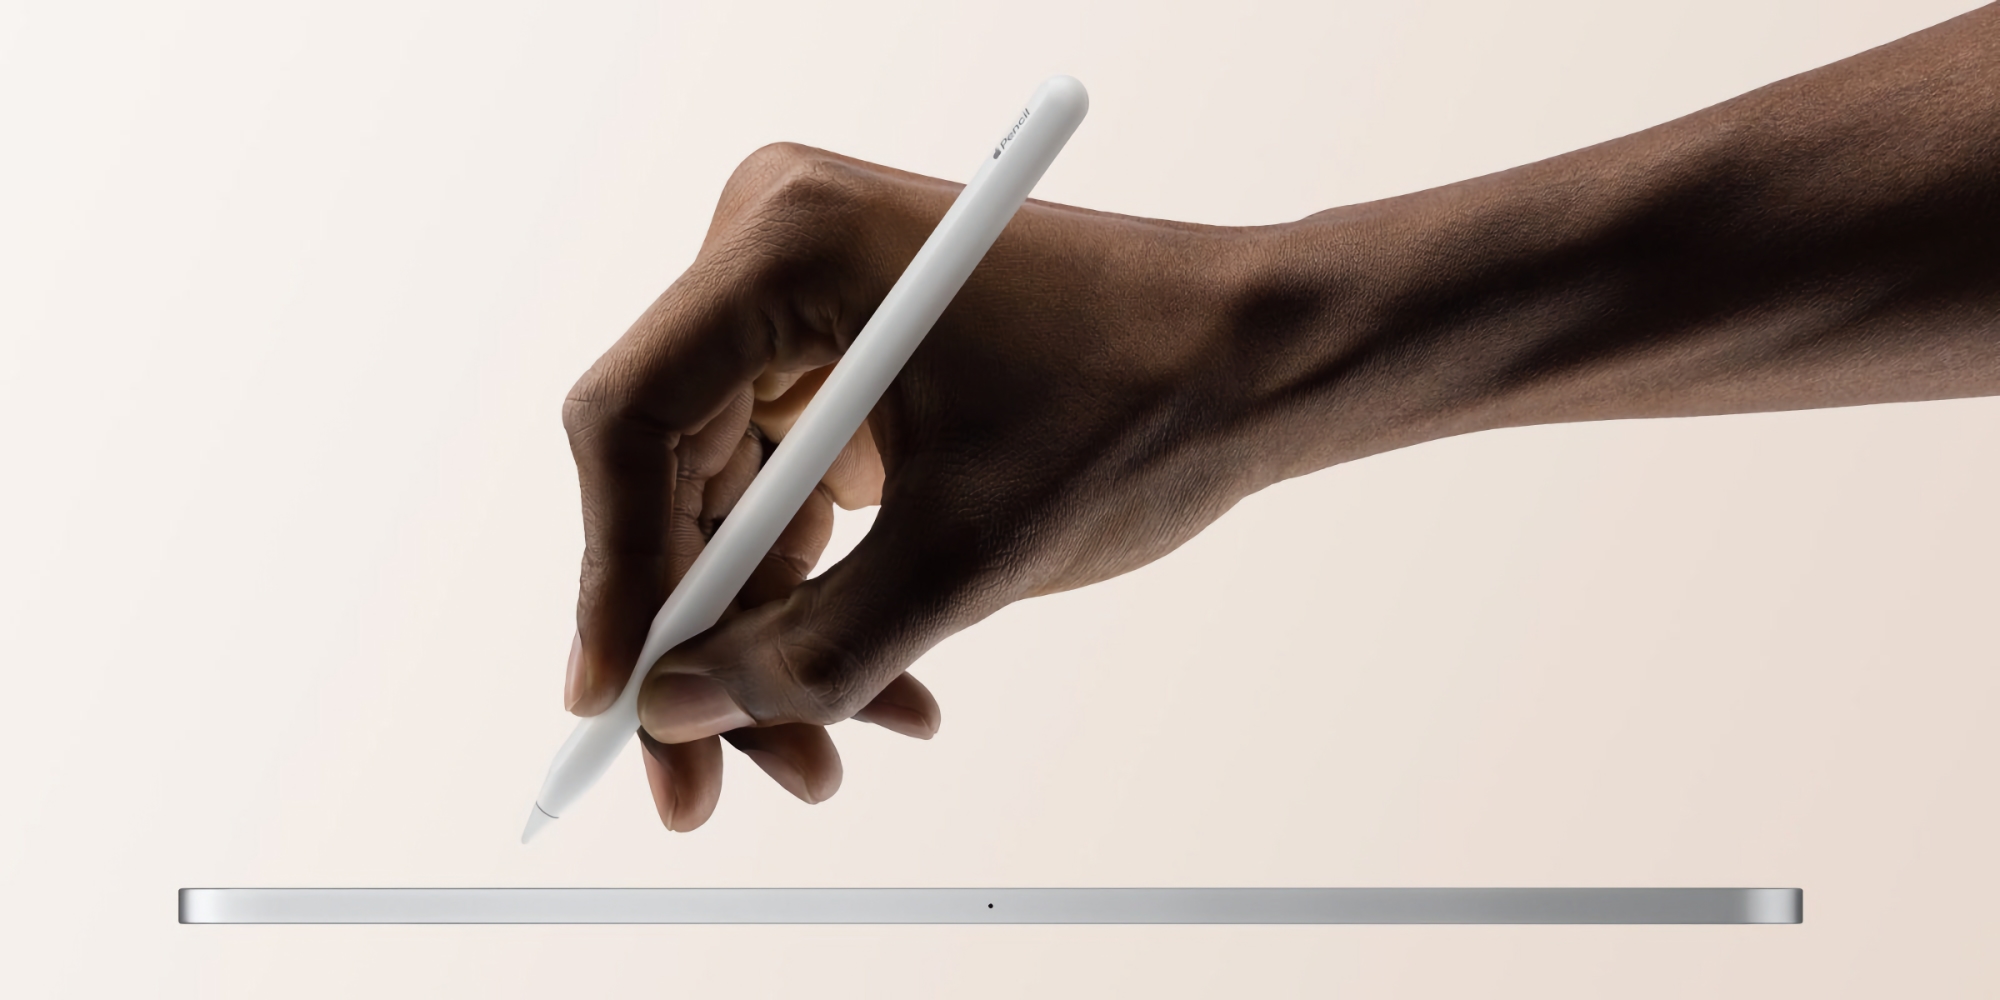 Apple Pencil 3 er under udvikling, gadget får en USB-C-port